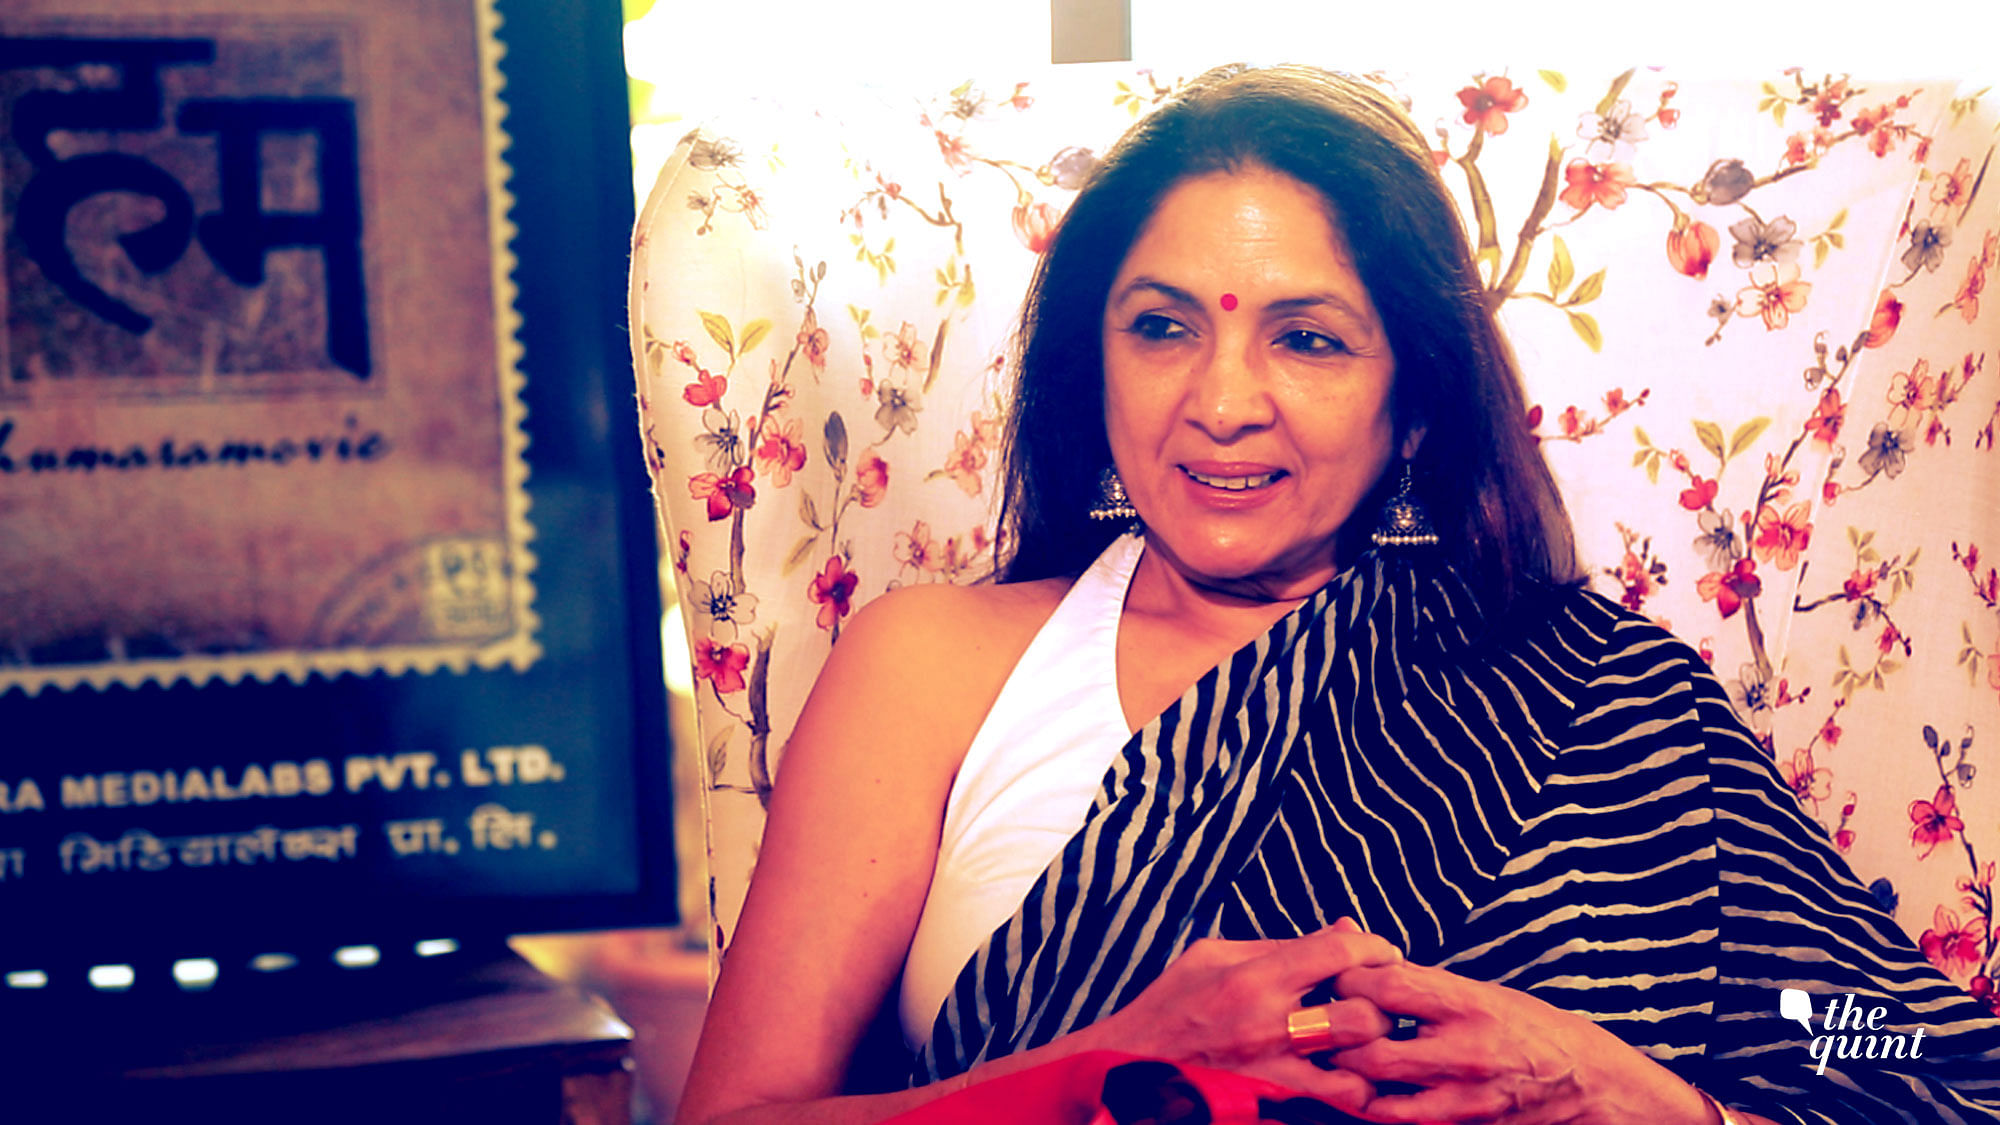 Neena Gupta has been on a career high post <i>Badhaai Ho</i>.